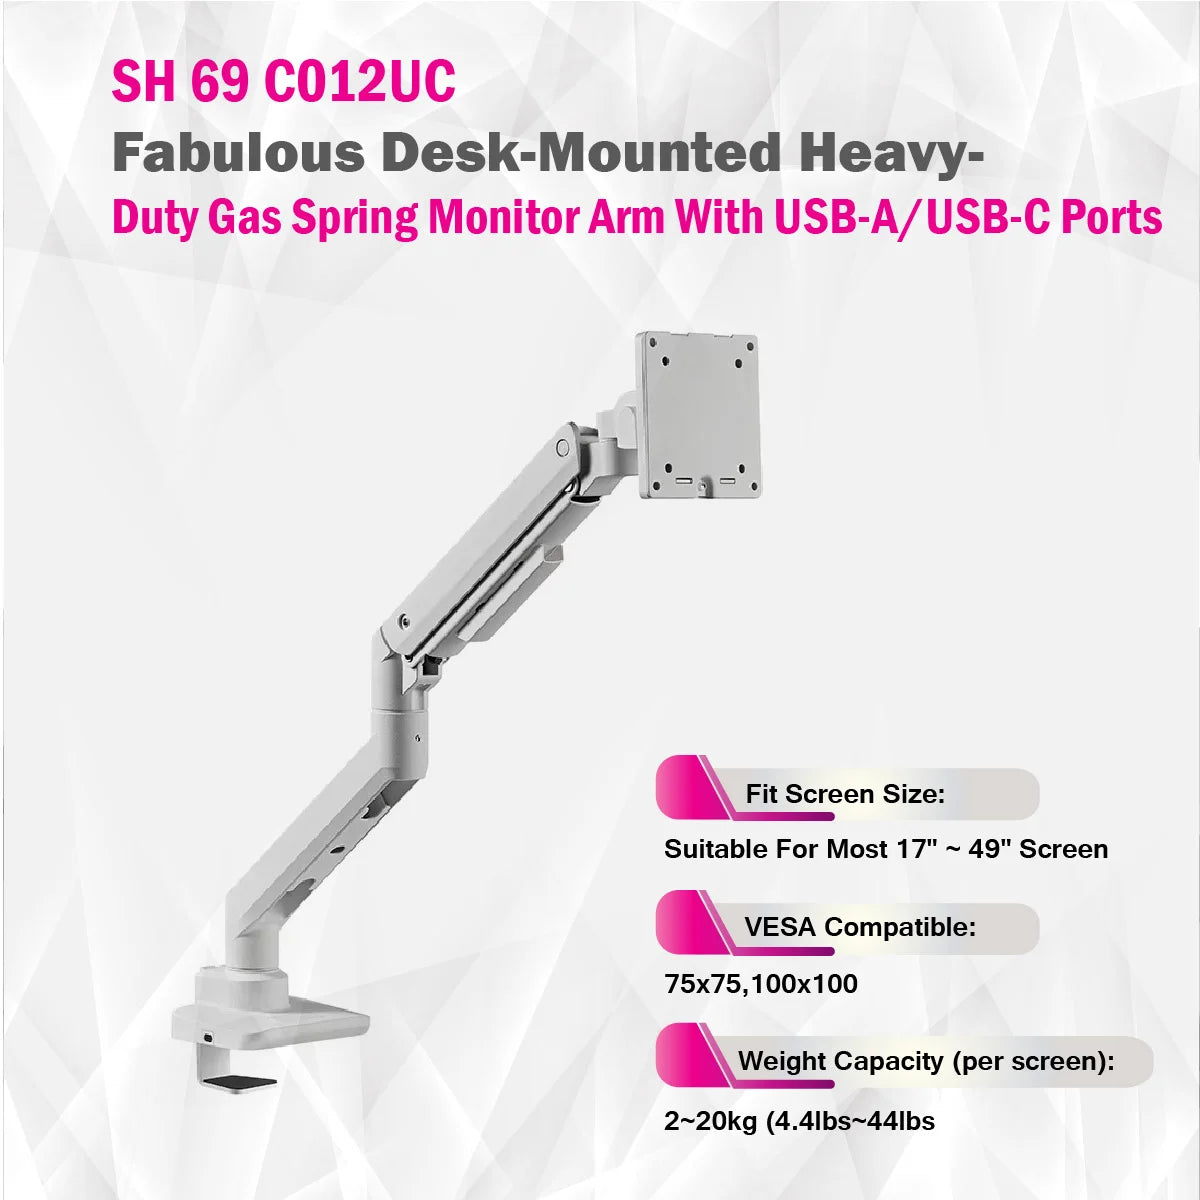 SkillTech - SH69 C012UC - Desk-Mounted Heavy-Duty Gas Spring Monitor Arm With USB-A/USB-C Ports